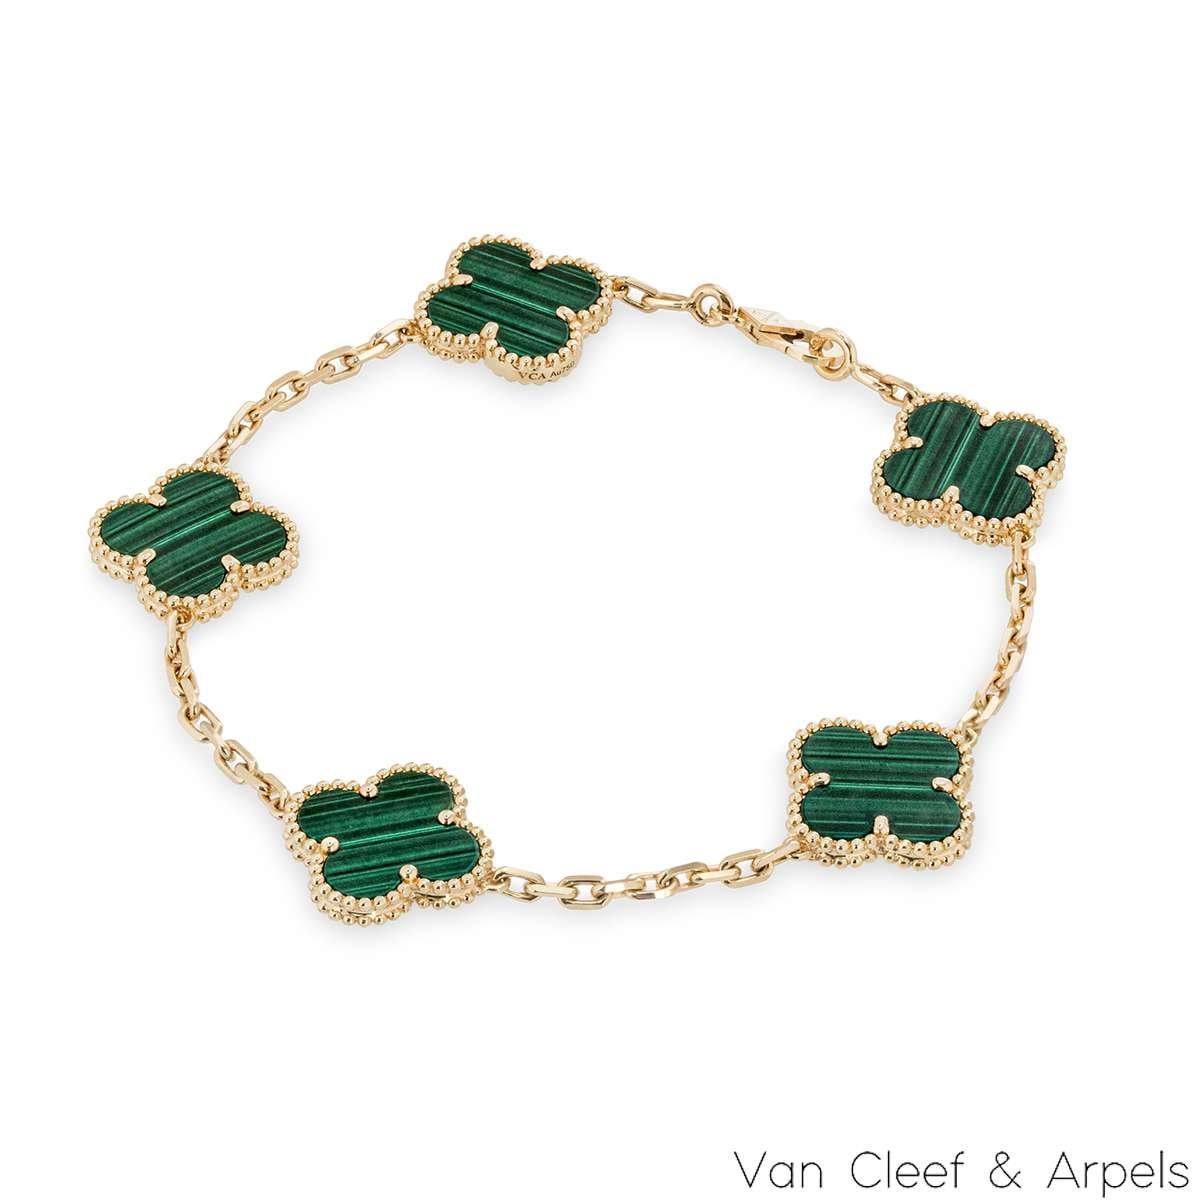 Un magnifique bracelet en malachite en or jaune 18 carats de Van Cleef & Arpels, de la collection Vintage Alhambra. Le bracelet présente 5 motifs emblématiques de trèfle à 4 feuilles, chacun avec un bord perlé et une incrustation de malachite. Le